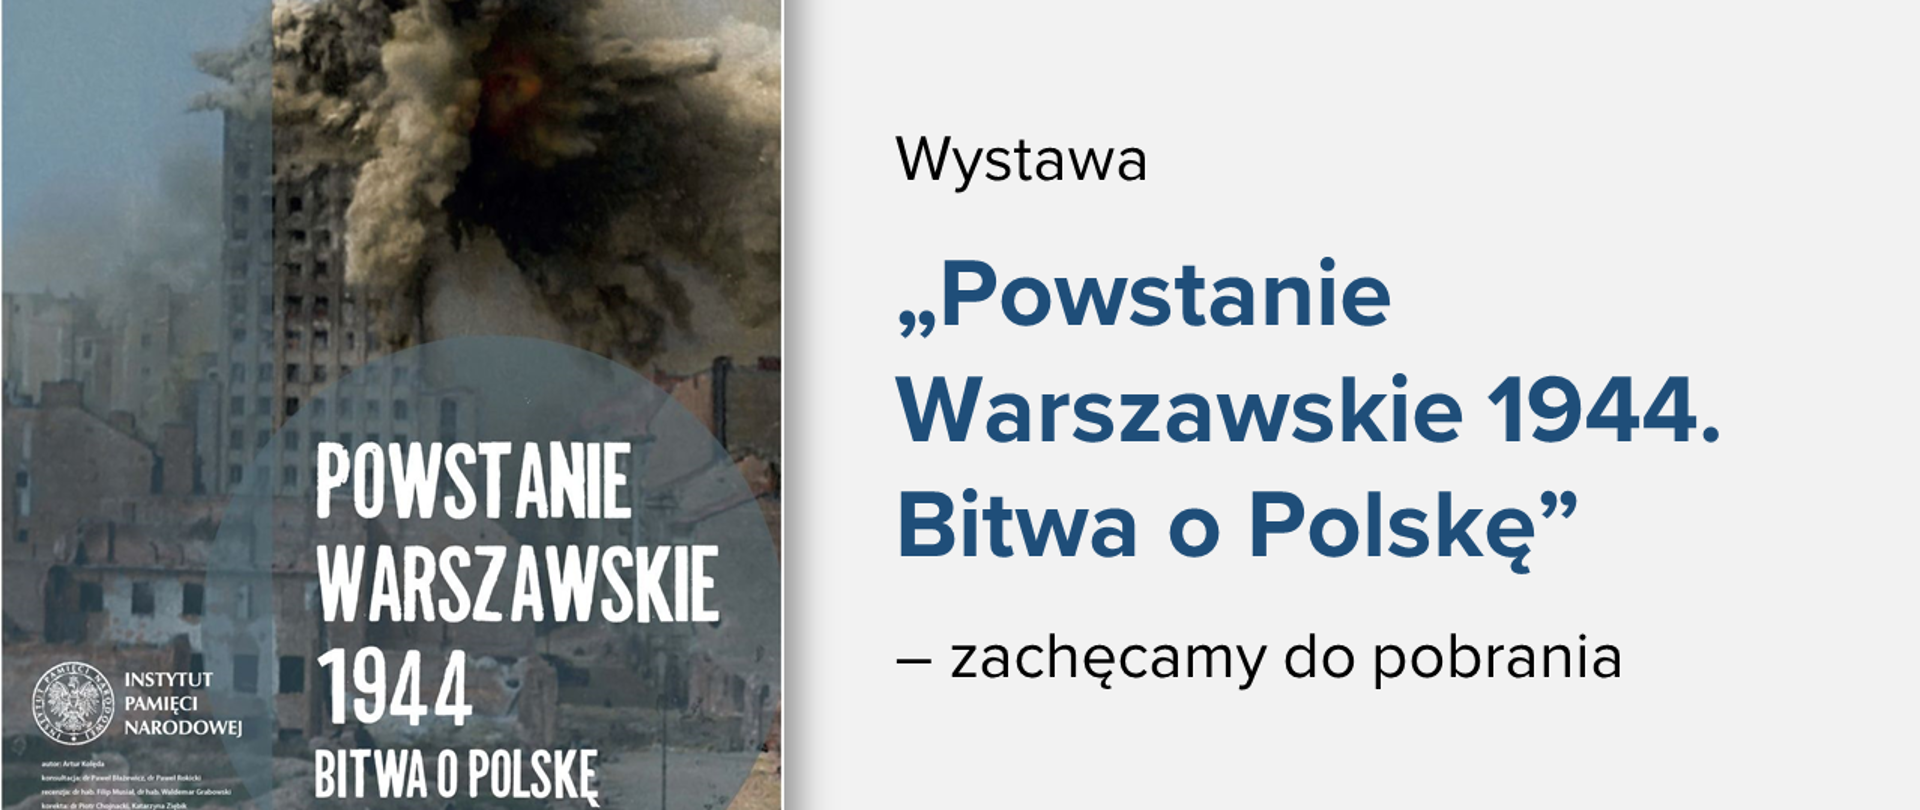 Plakat informujący o wystawie "Powstanie Warszawskie 1944. Bitwa o Polskę". Obok napis na jasnym tle: "Wystawa "Powstanie Warszawskie 1944. Bitwa o Polskę" – zachęcamy do pobrania"